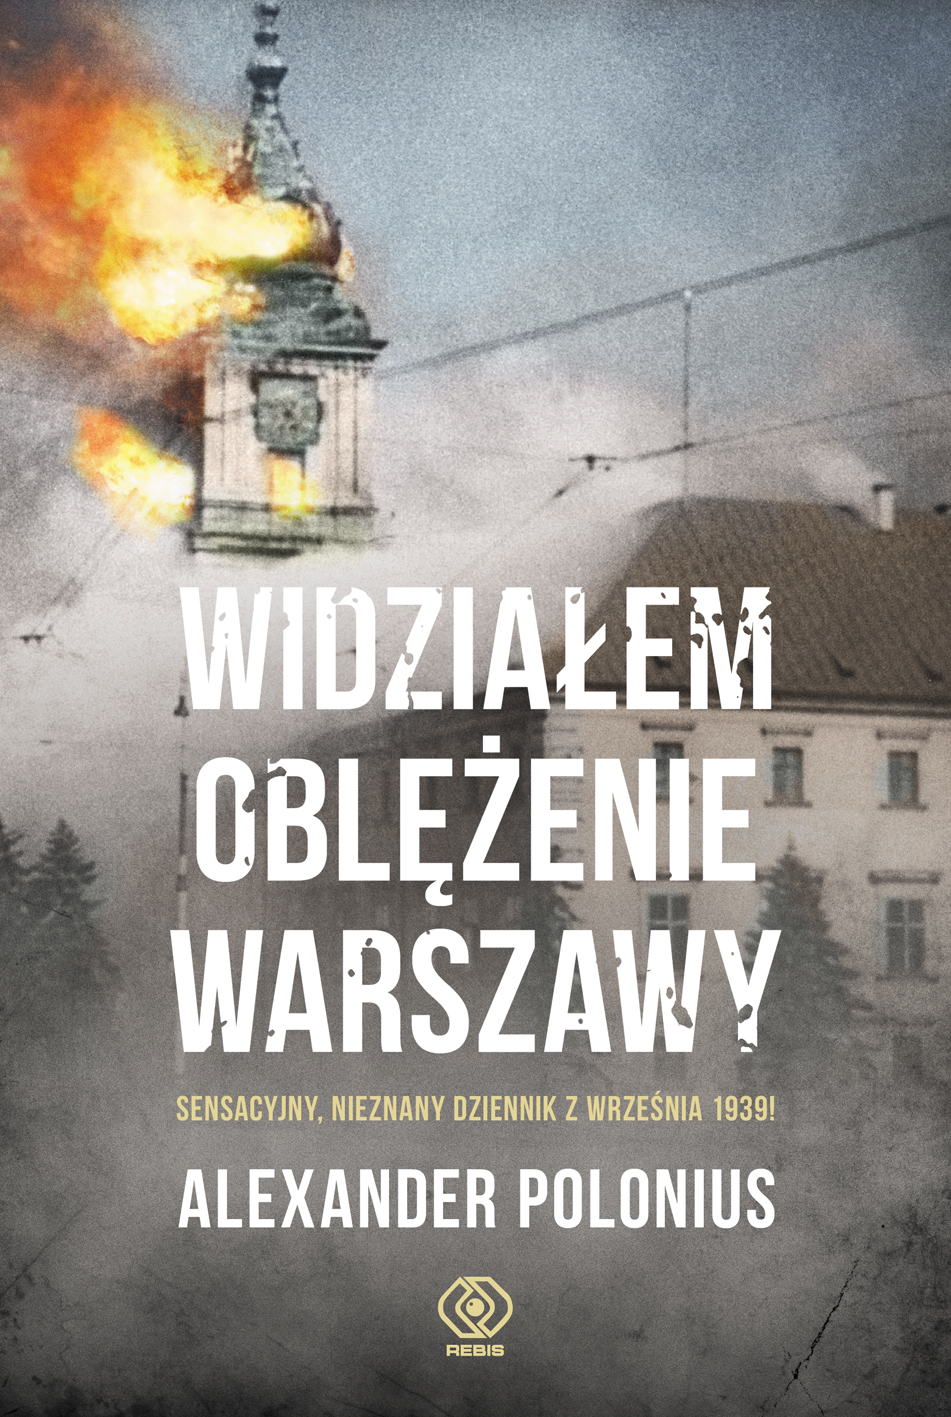 "Widziałem oblężenie Warszawy," Alexander Polonius